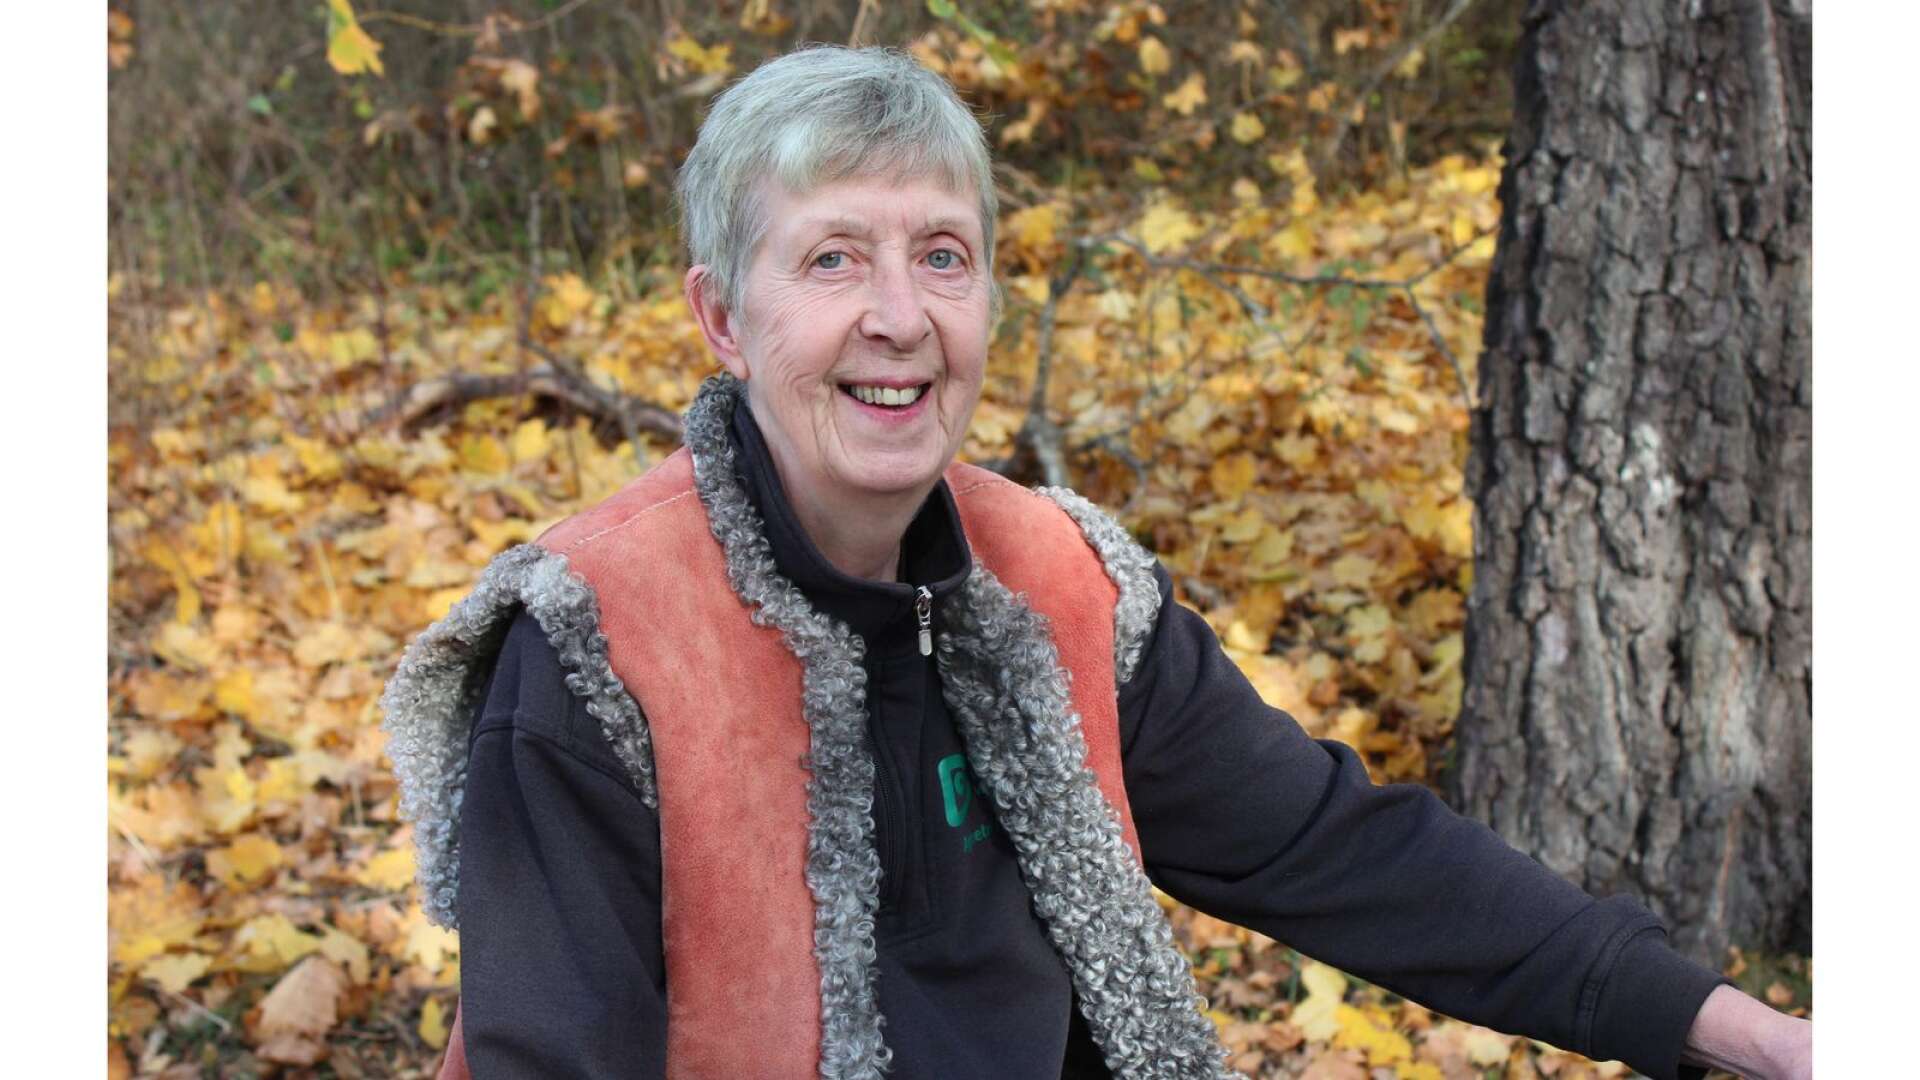 Agneta Holmqvist är kassör i Boda hembygdsförening och administratör för webbplatsen ”Utforska platsen”. Hon har kartlagt närmare 300 gårdar i fyra byar norr om Boda kyrka. Själv bor hon sedan 1974 på Ängbacken eller ”gamla Konsum” i Rennstad.